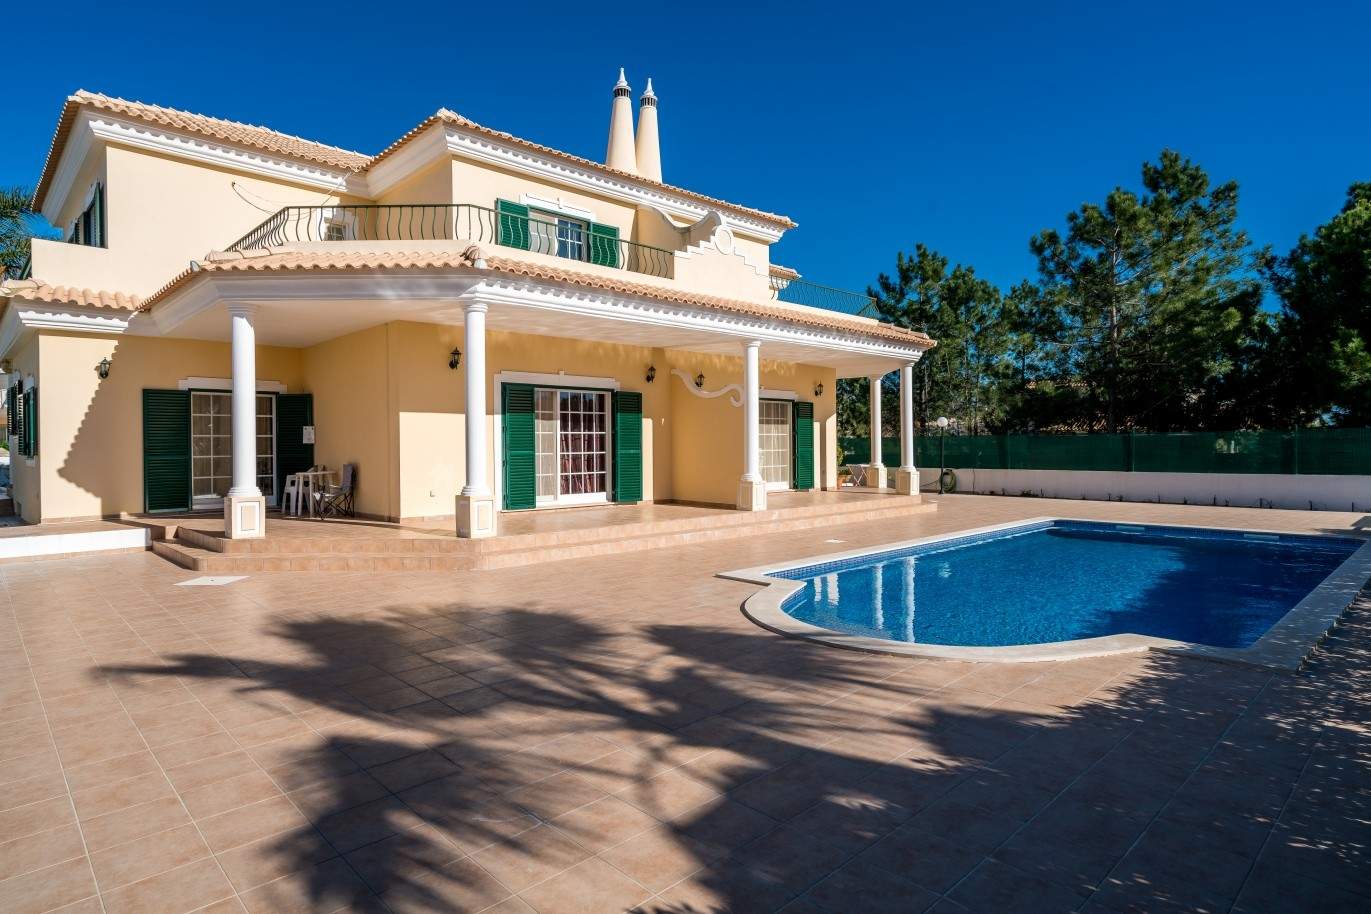 Vivienda en venta con piscina, cerca golf, Vilamoura, Algarve,Portugal_73621